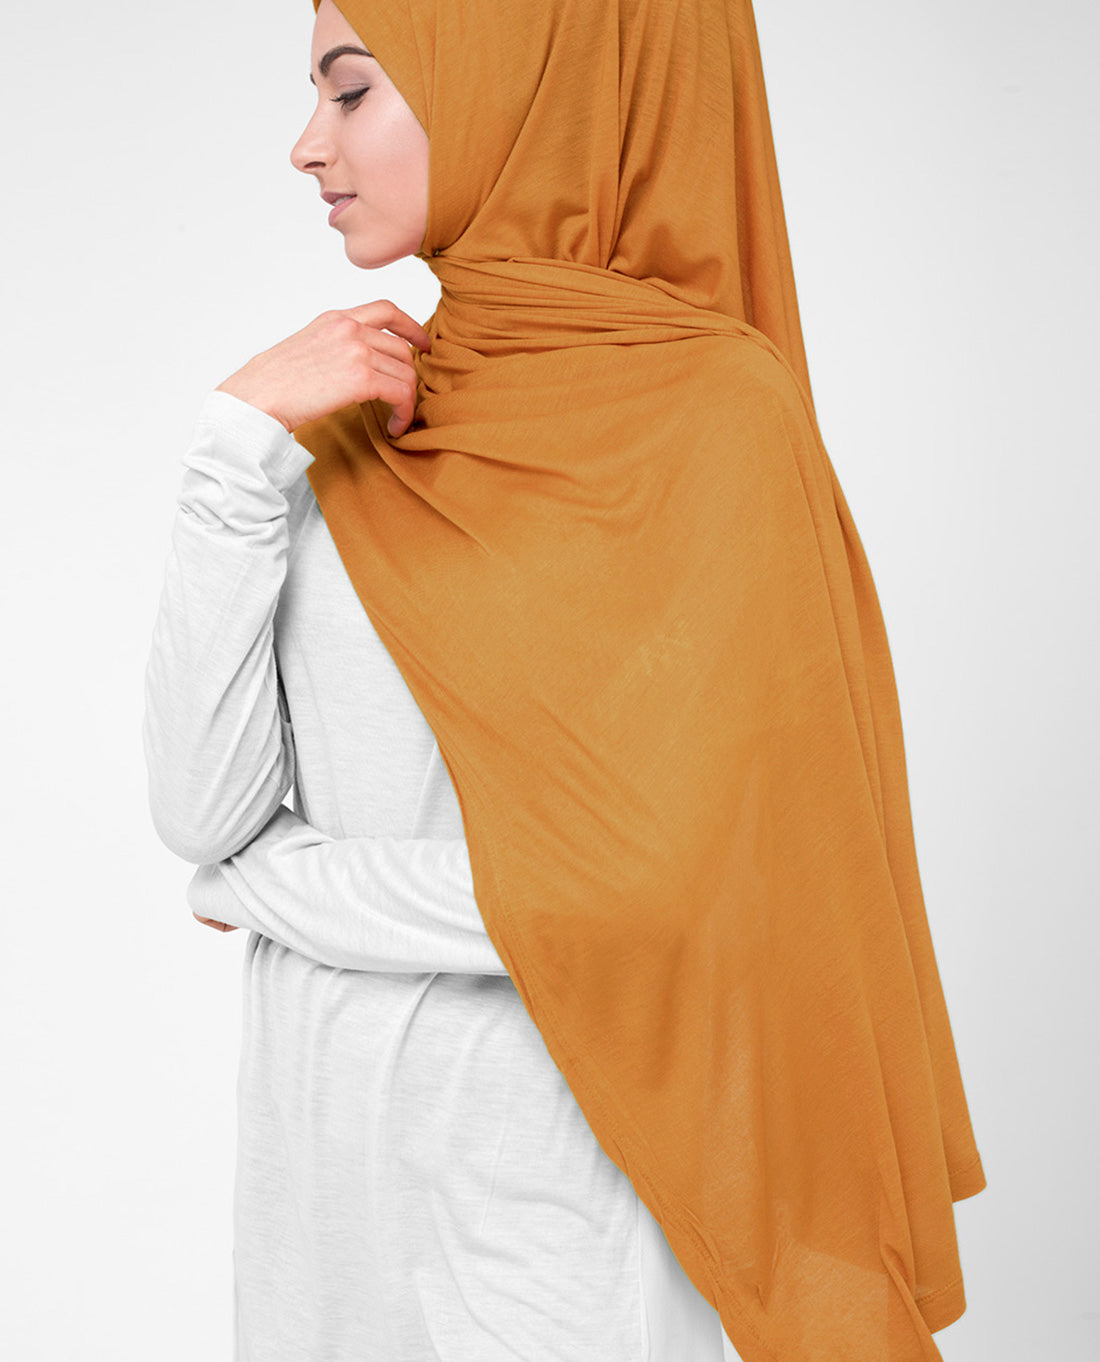 Jersey Hijab Premium quality orange nude blush – kaiapparel